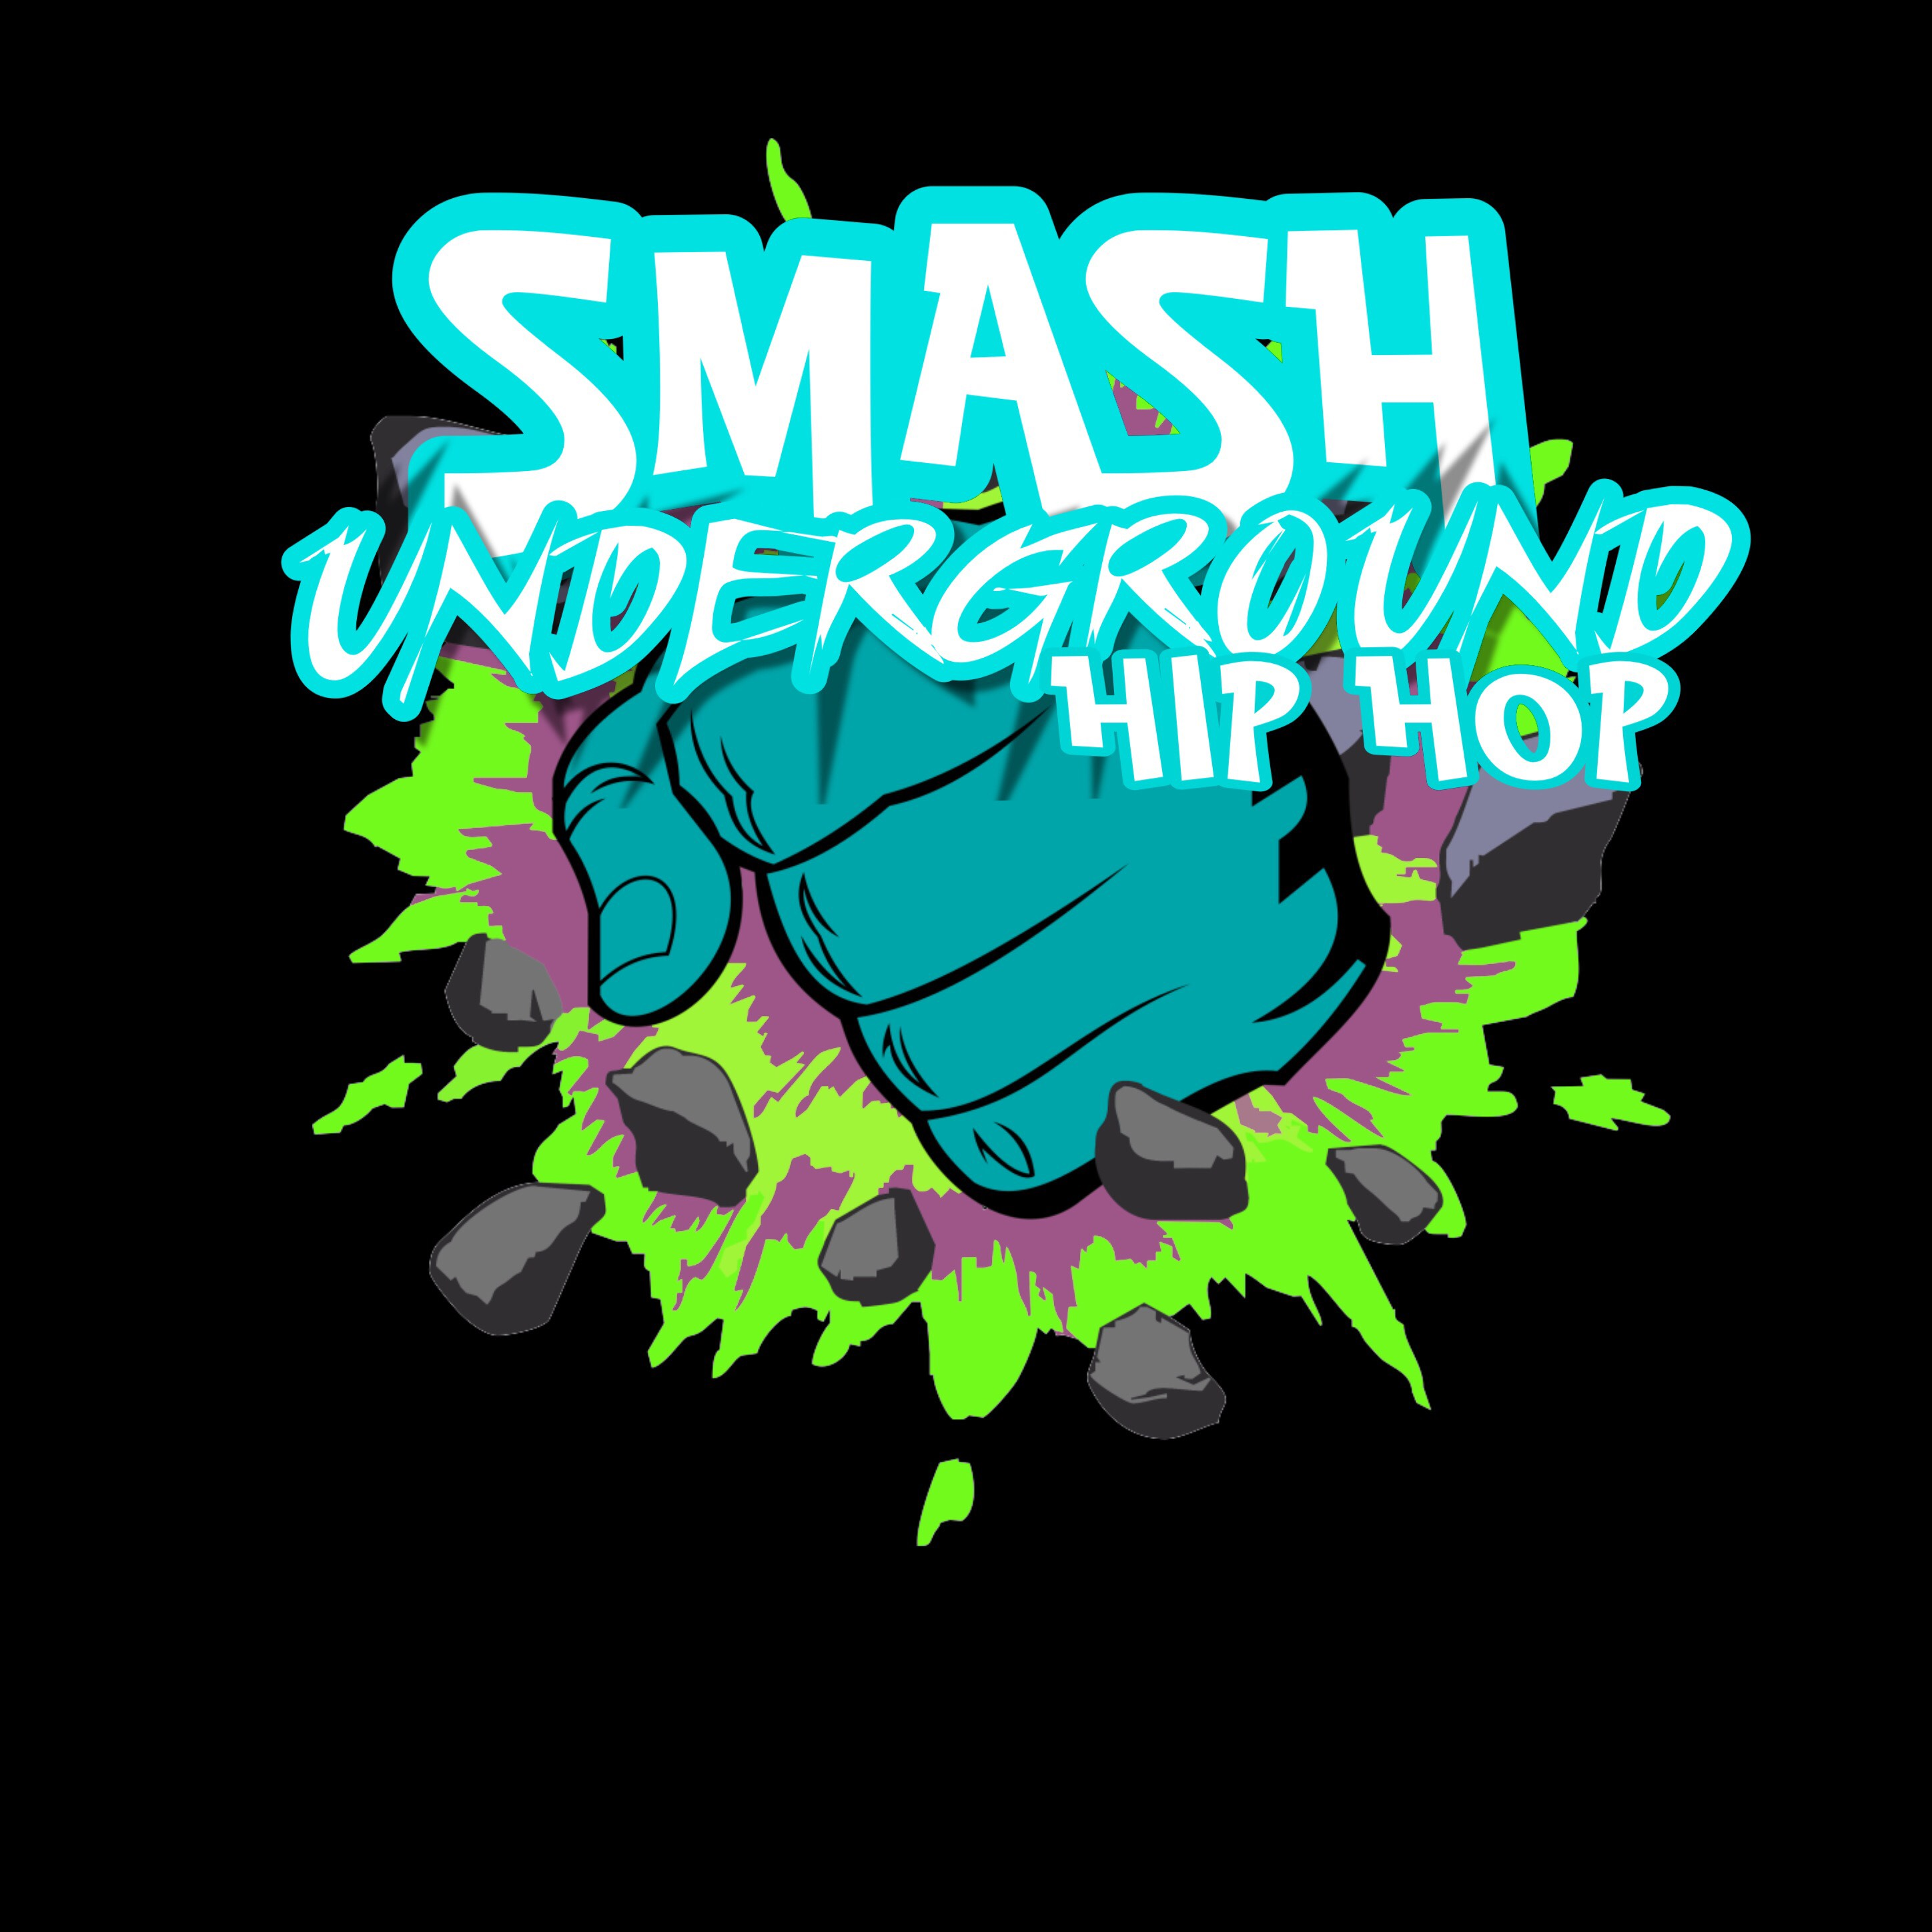 Smash Underground Hip-hop